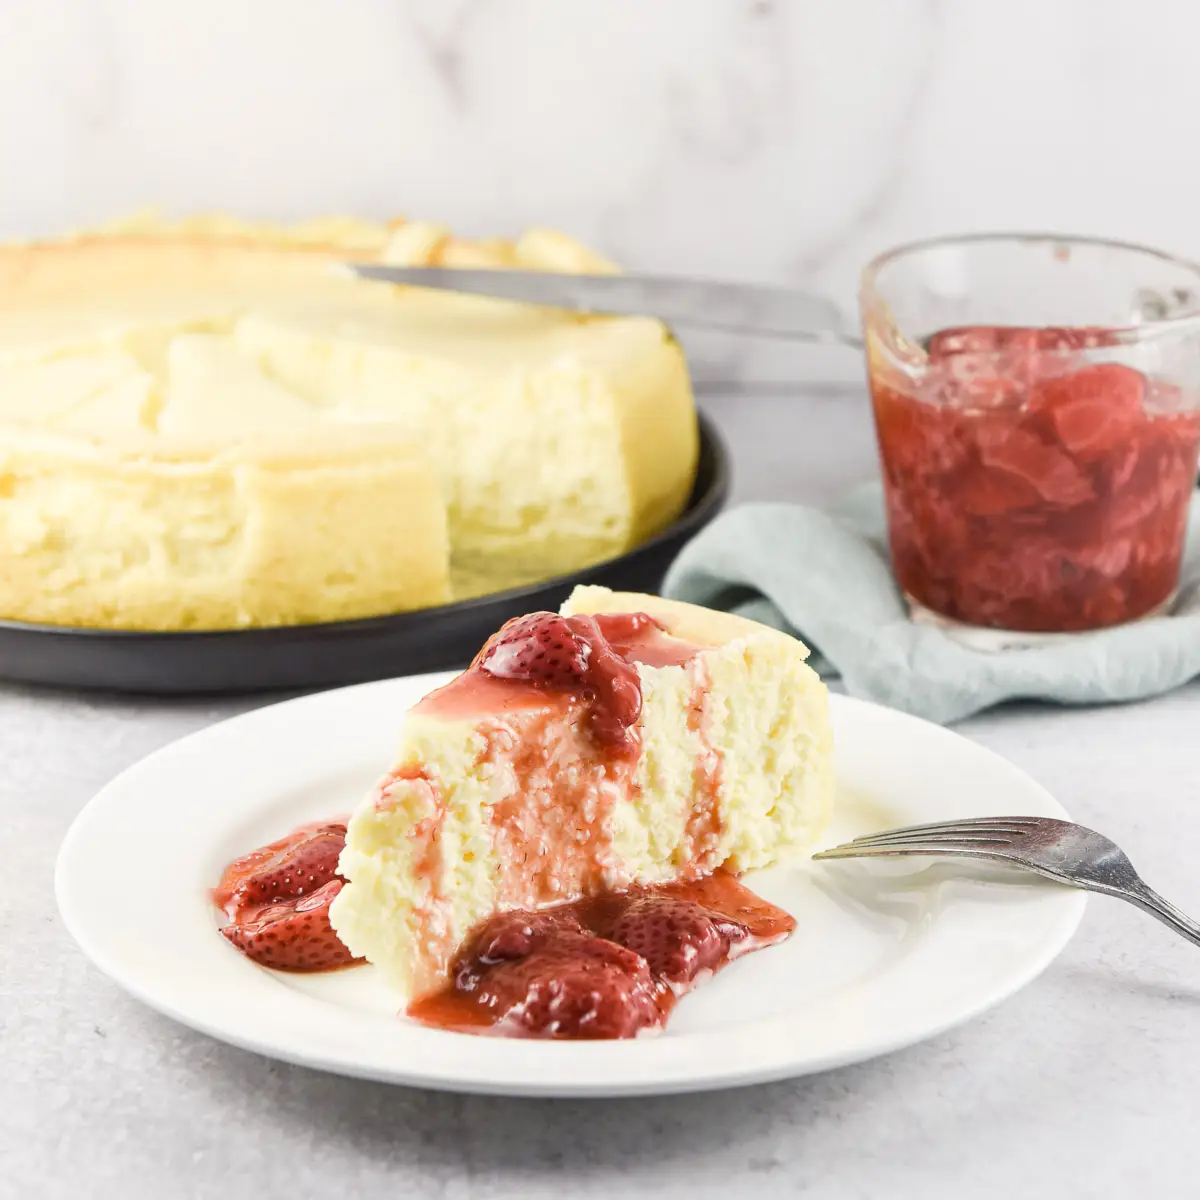 Claire’s Creamy Cheesecake Recipe